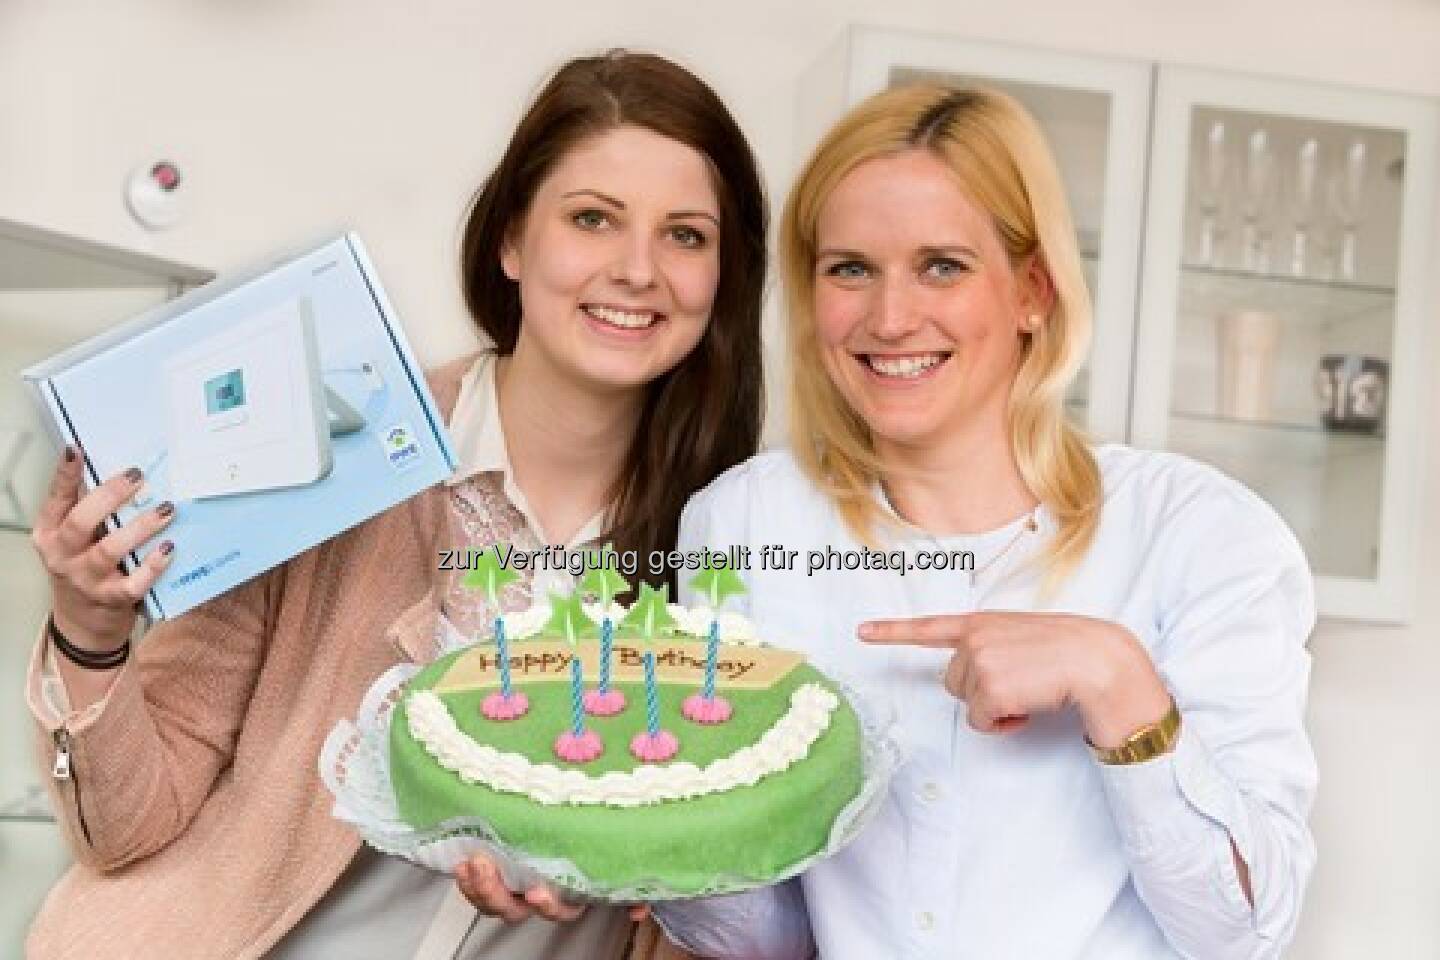 Fünf Jahre RWE SmartHome : RWE SmartHome feiert mit der Cashback-Aktion Geburtstag : Fotocredit: RWE Effizienz